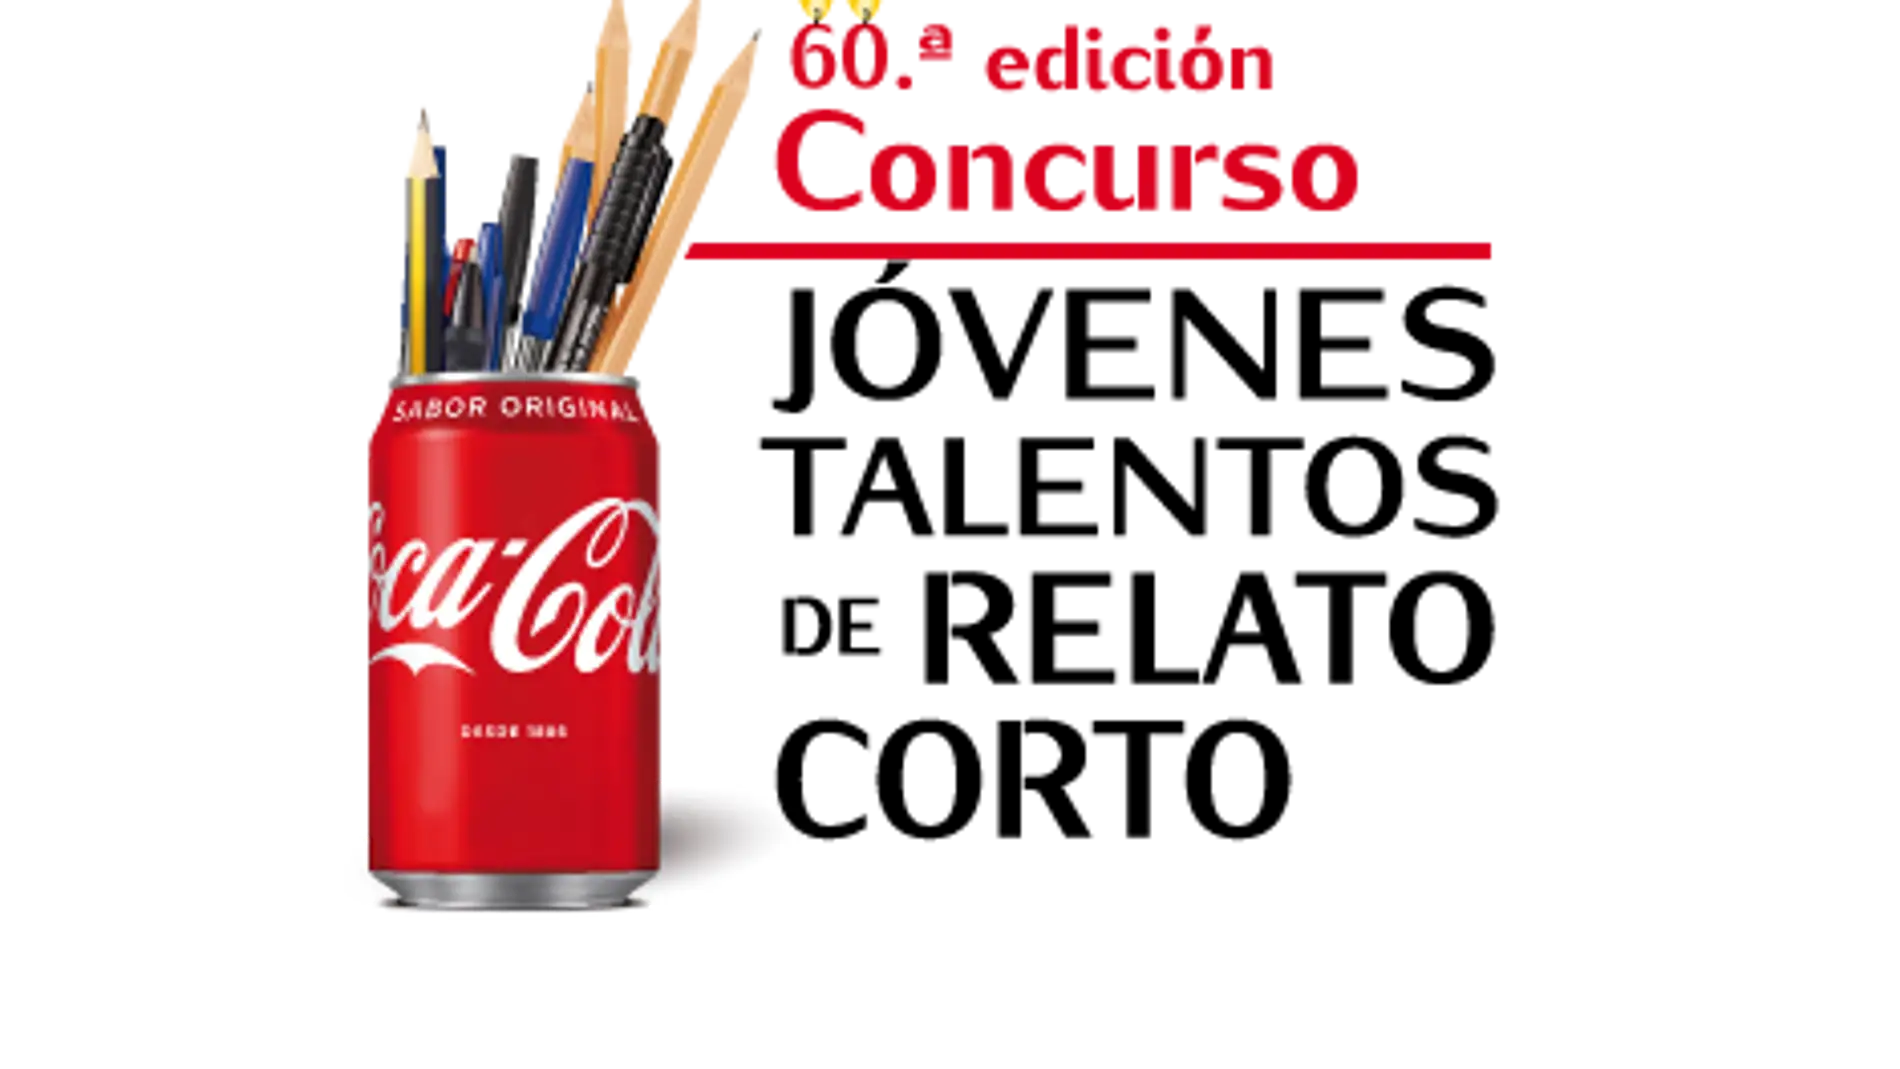 Coca-Cola digitaliza su concurso de escritura juvenil